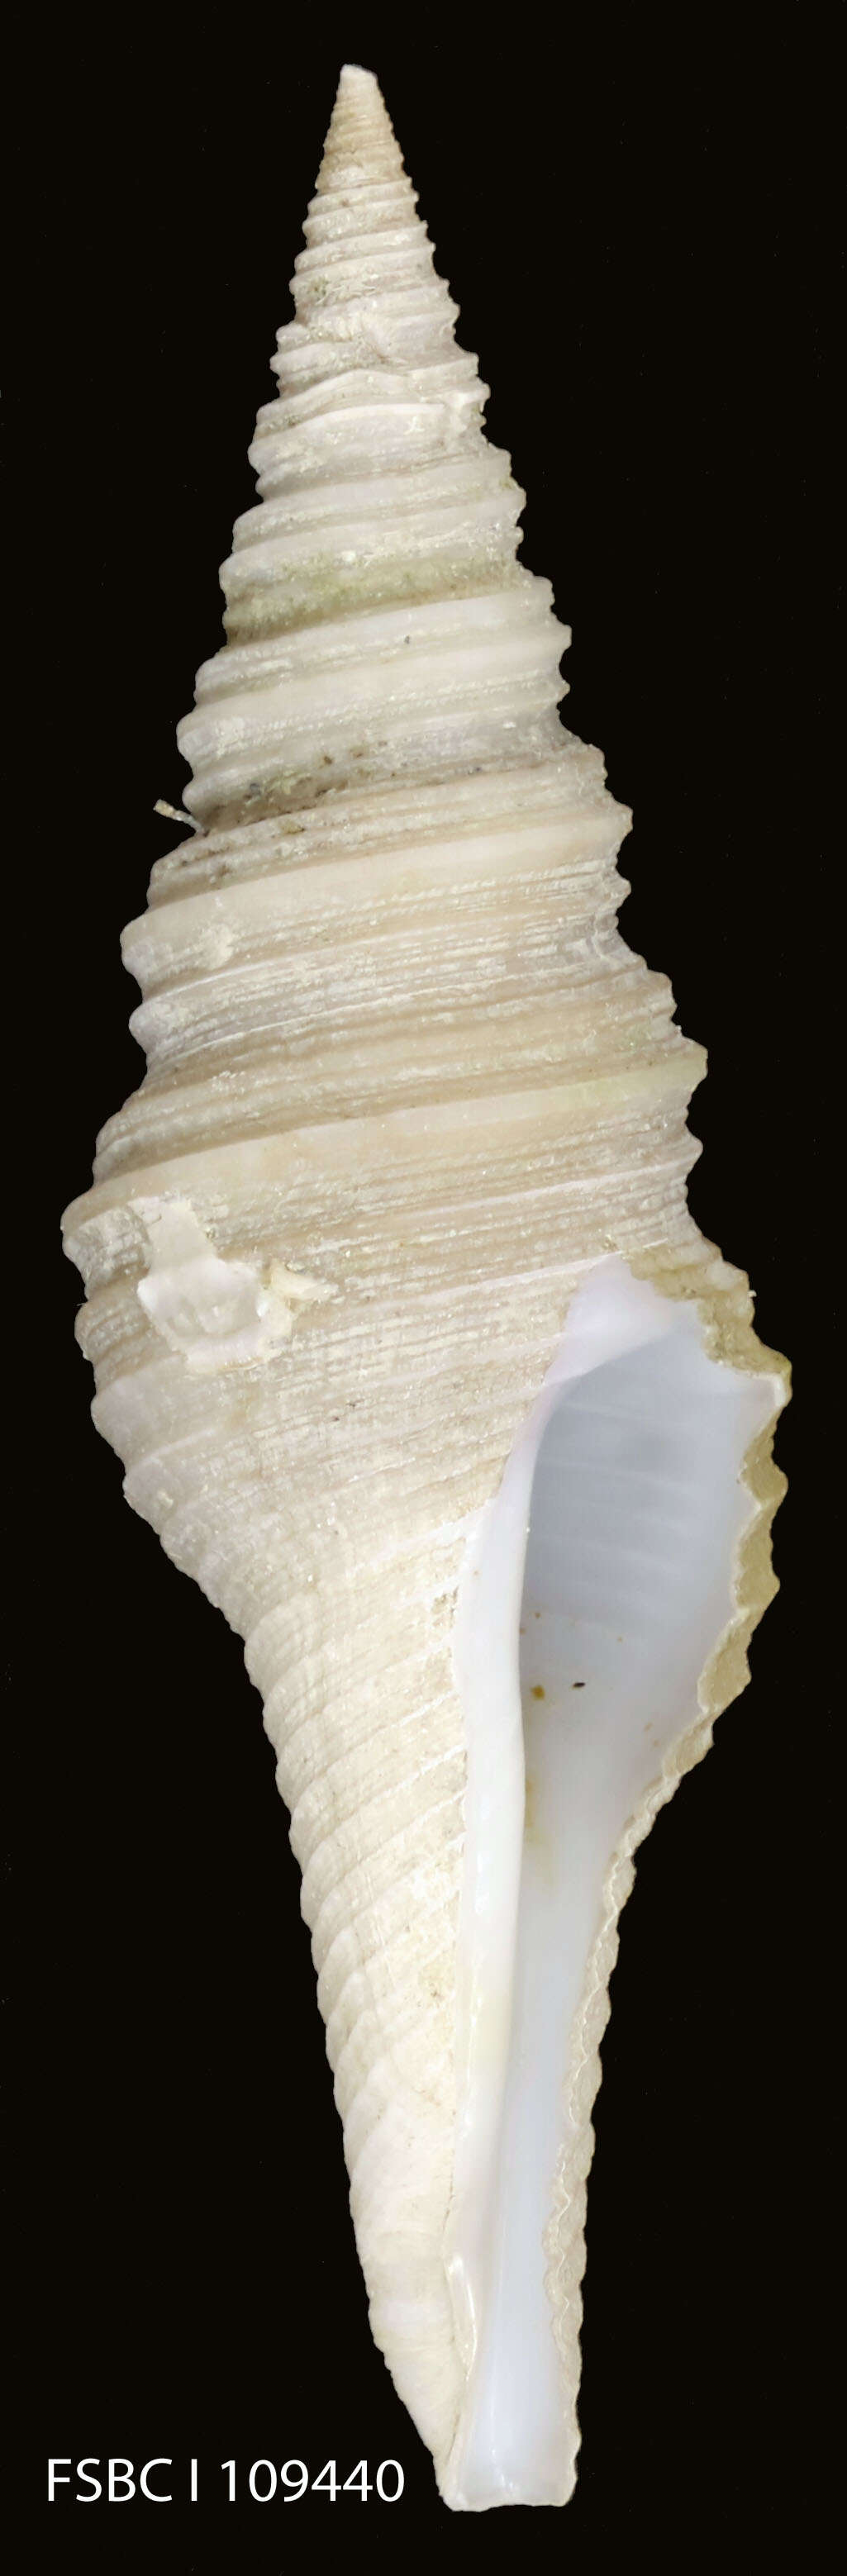 Sivun Turridae H. Adams & A. Adams 1853 kuva